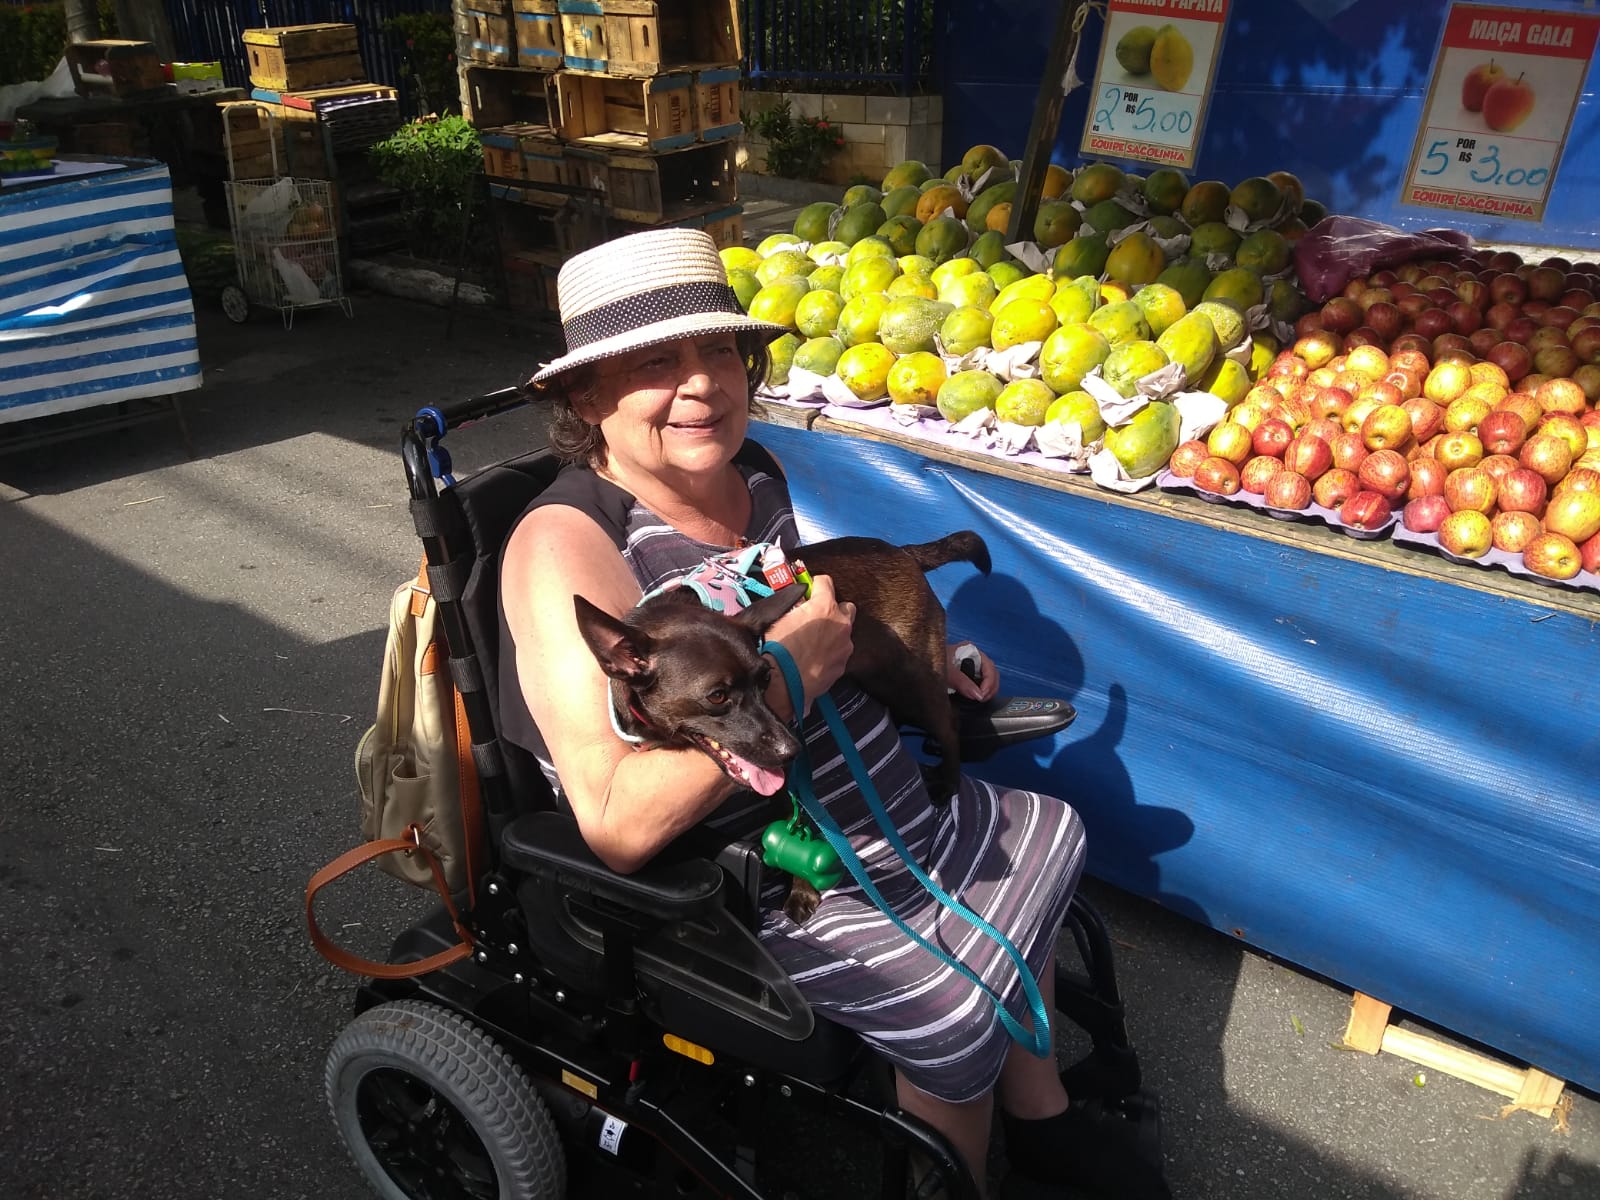 Foto de Flávia Vital, uma mulher branca em uma cadeira de rodas. Ela está sorrindo, usa um chapéu panamá e tem um pequeno cachorro no colo. Ao fundo, há barracas de frutas em uma feira